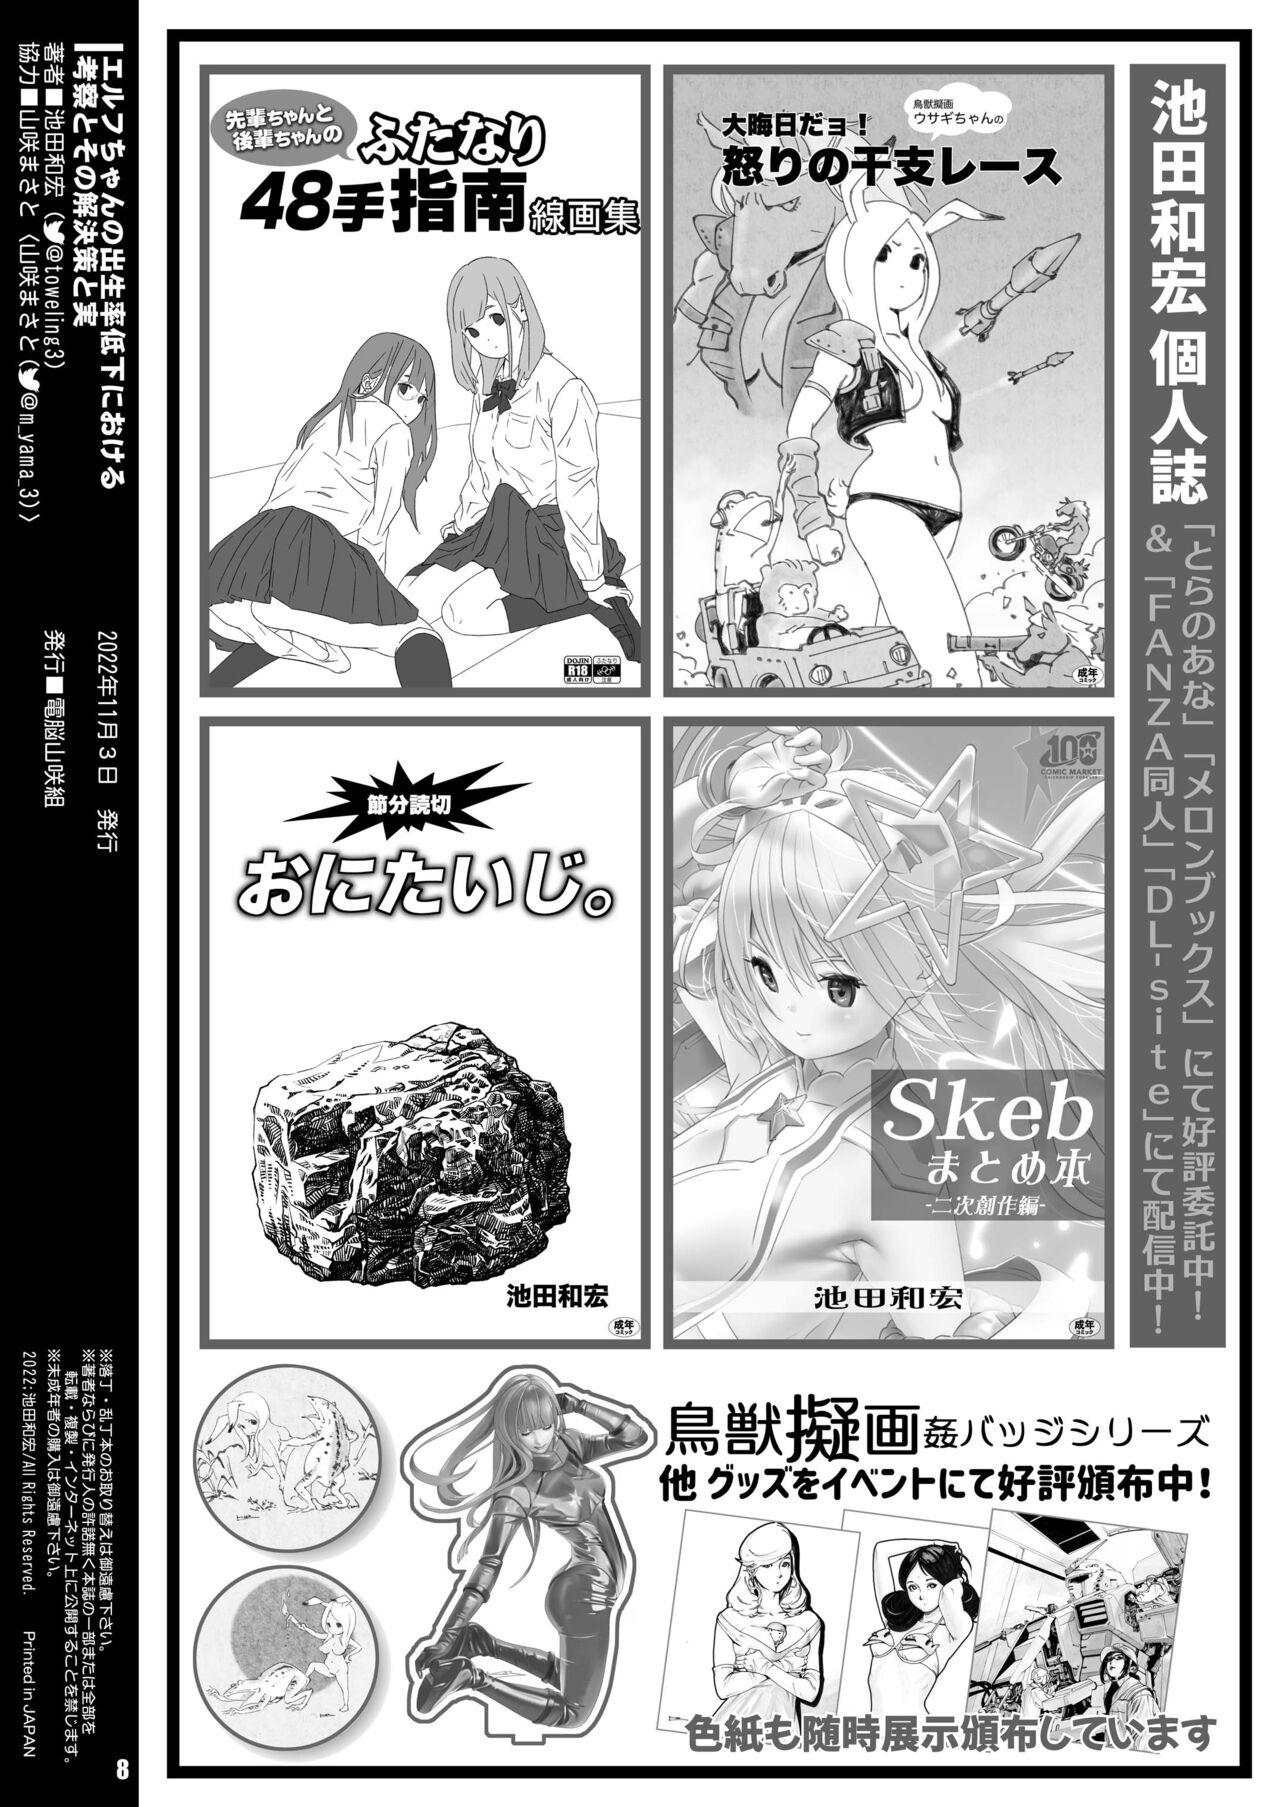 Handsome Elf-chan no Shusseiritsu Teika ni Okeru Kousatsu to sono Kaiketsusaku no Jissen - Original Egypt - Page 8